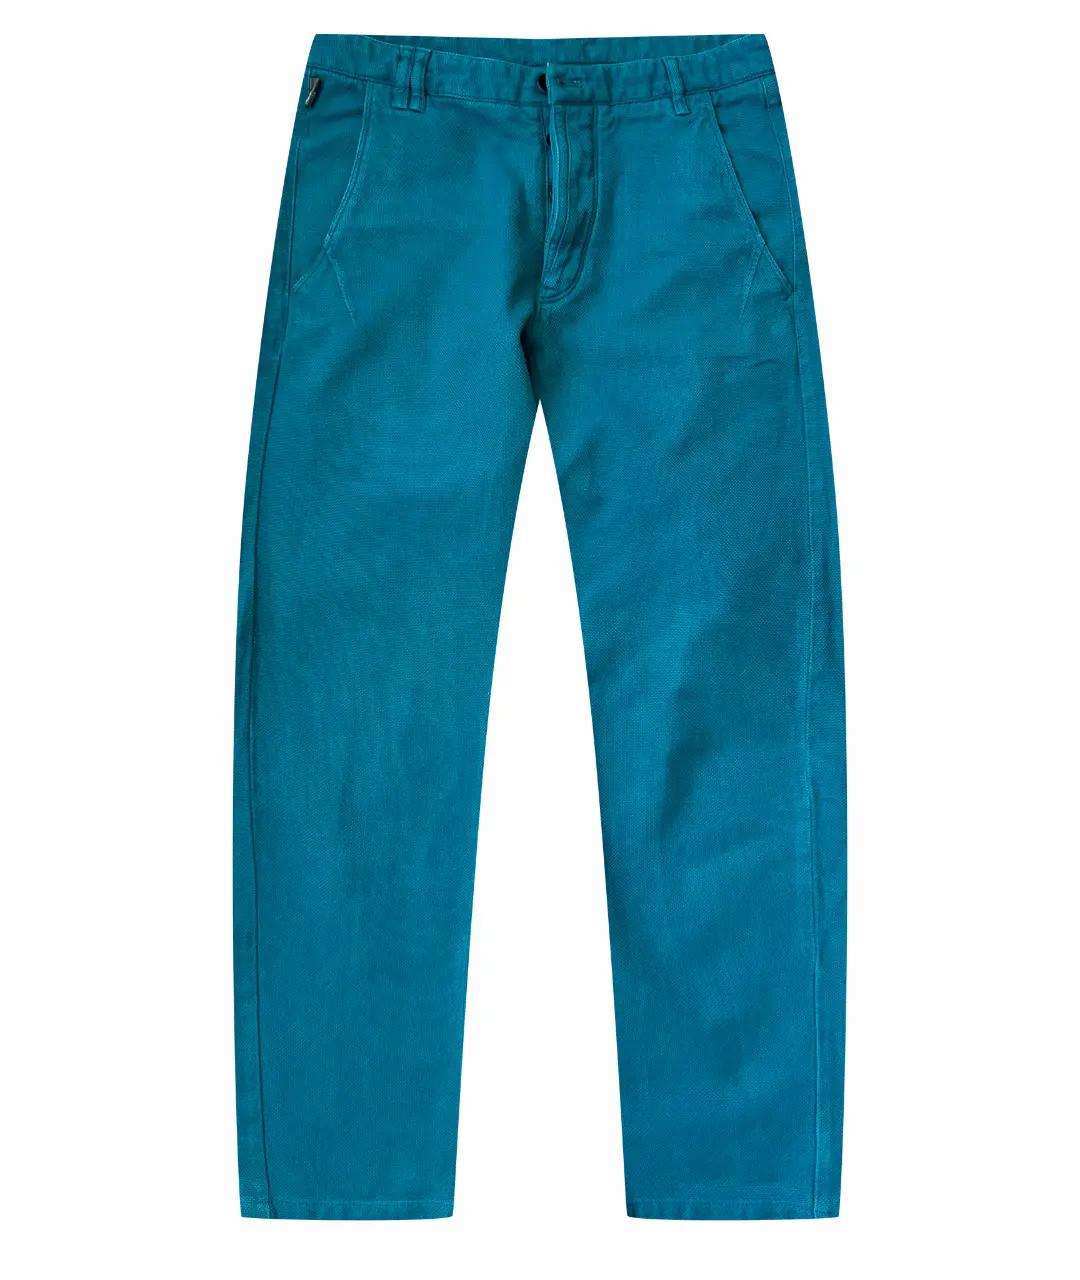 ARMANI COLLEZIONI Бирюзовые хлопковые прямые джинсы, фото 1